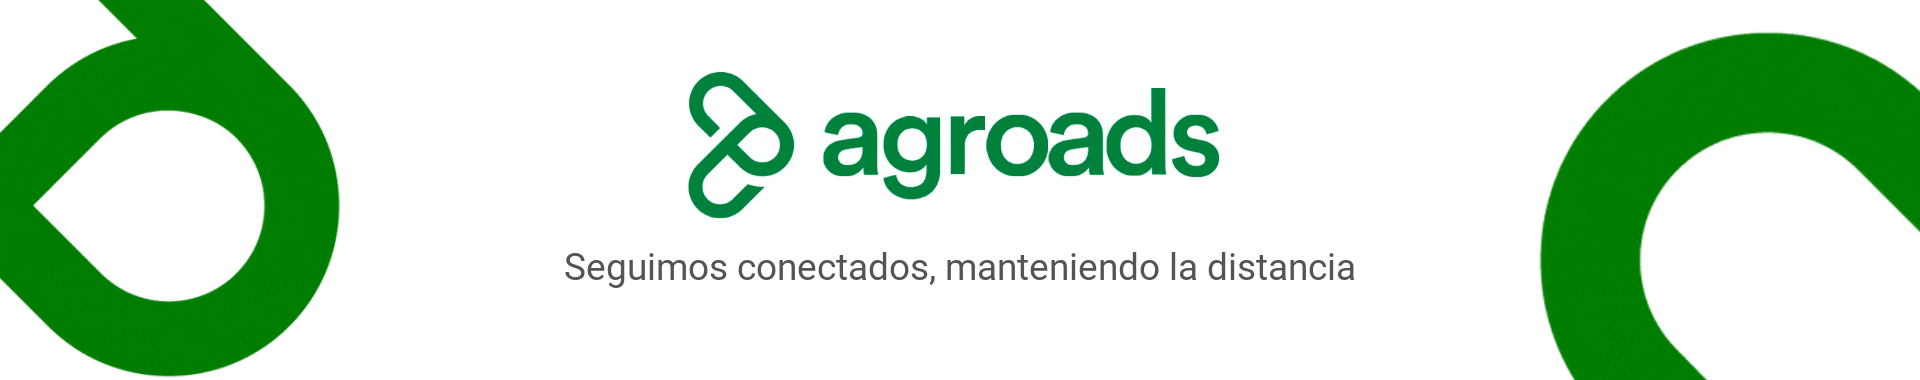 Agroads logo renovado